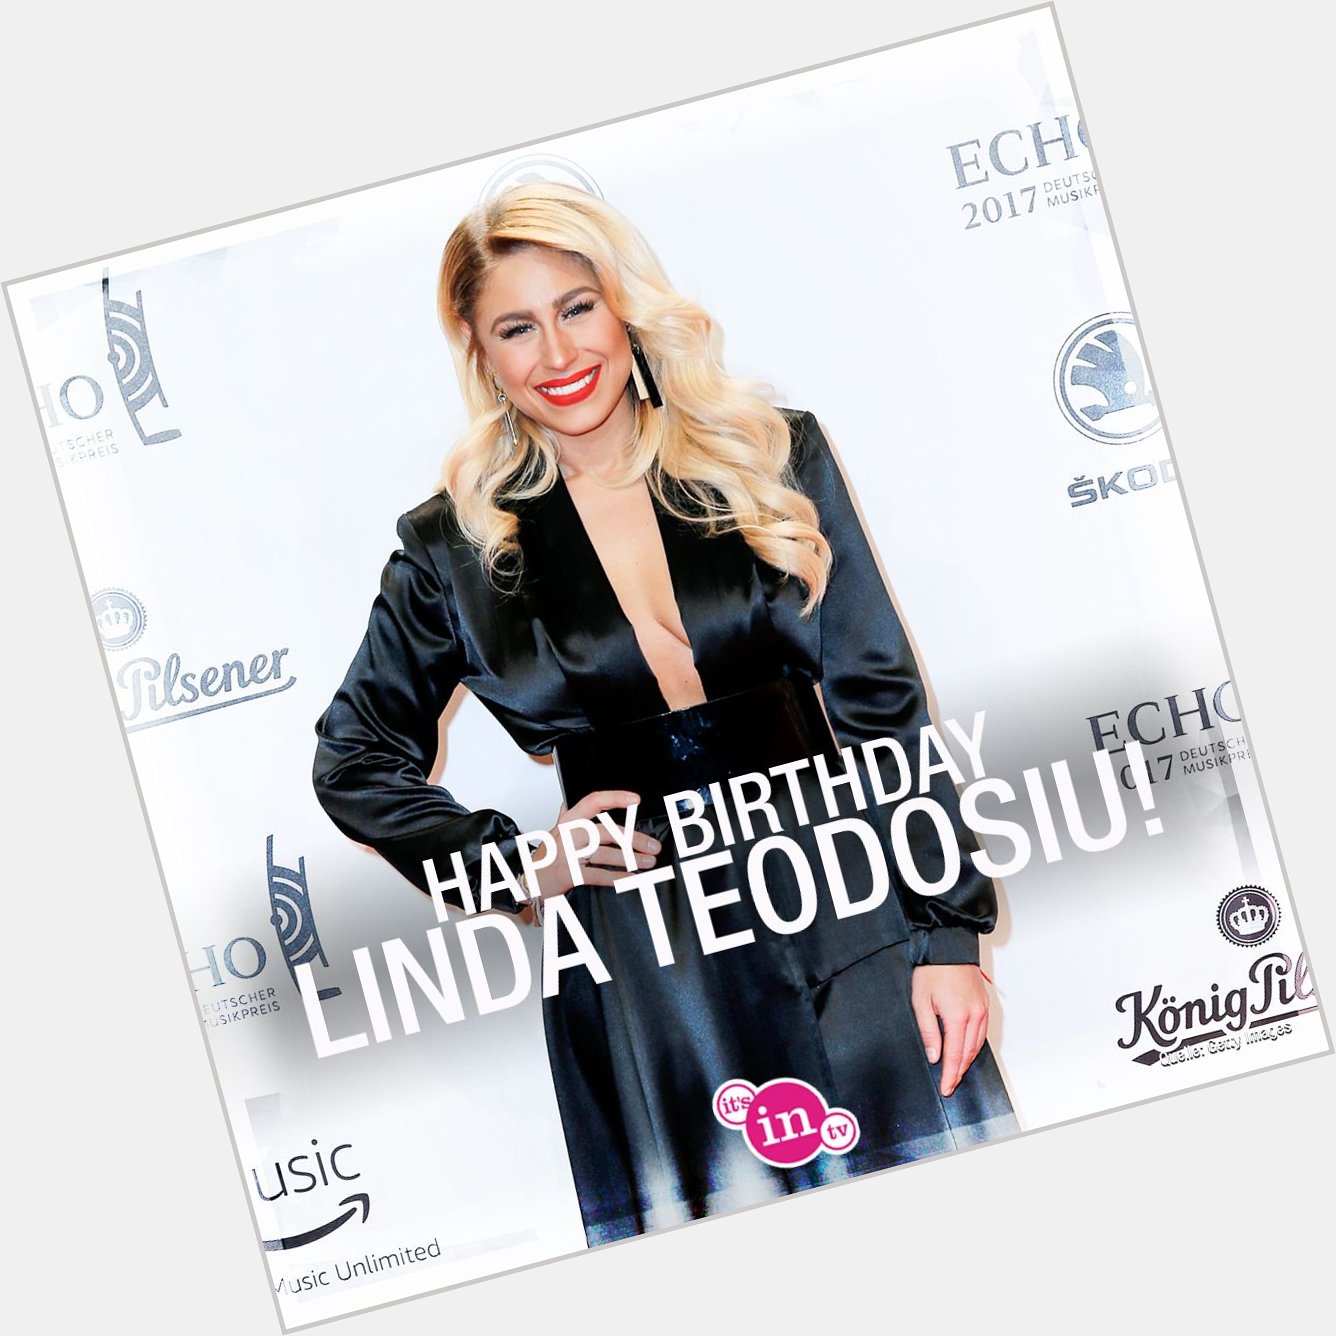 Unser heutiges Geburtstagskind ist Linda Teodosiu! Happy Birthday! Hoch soll sie leben!  